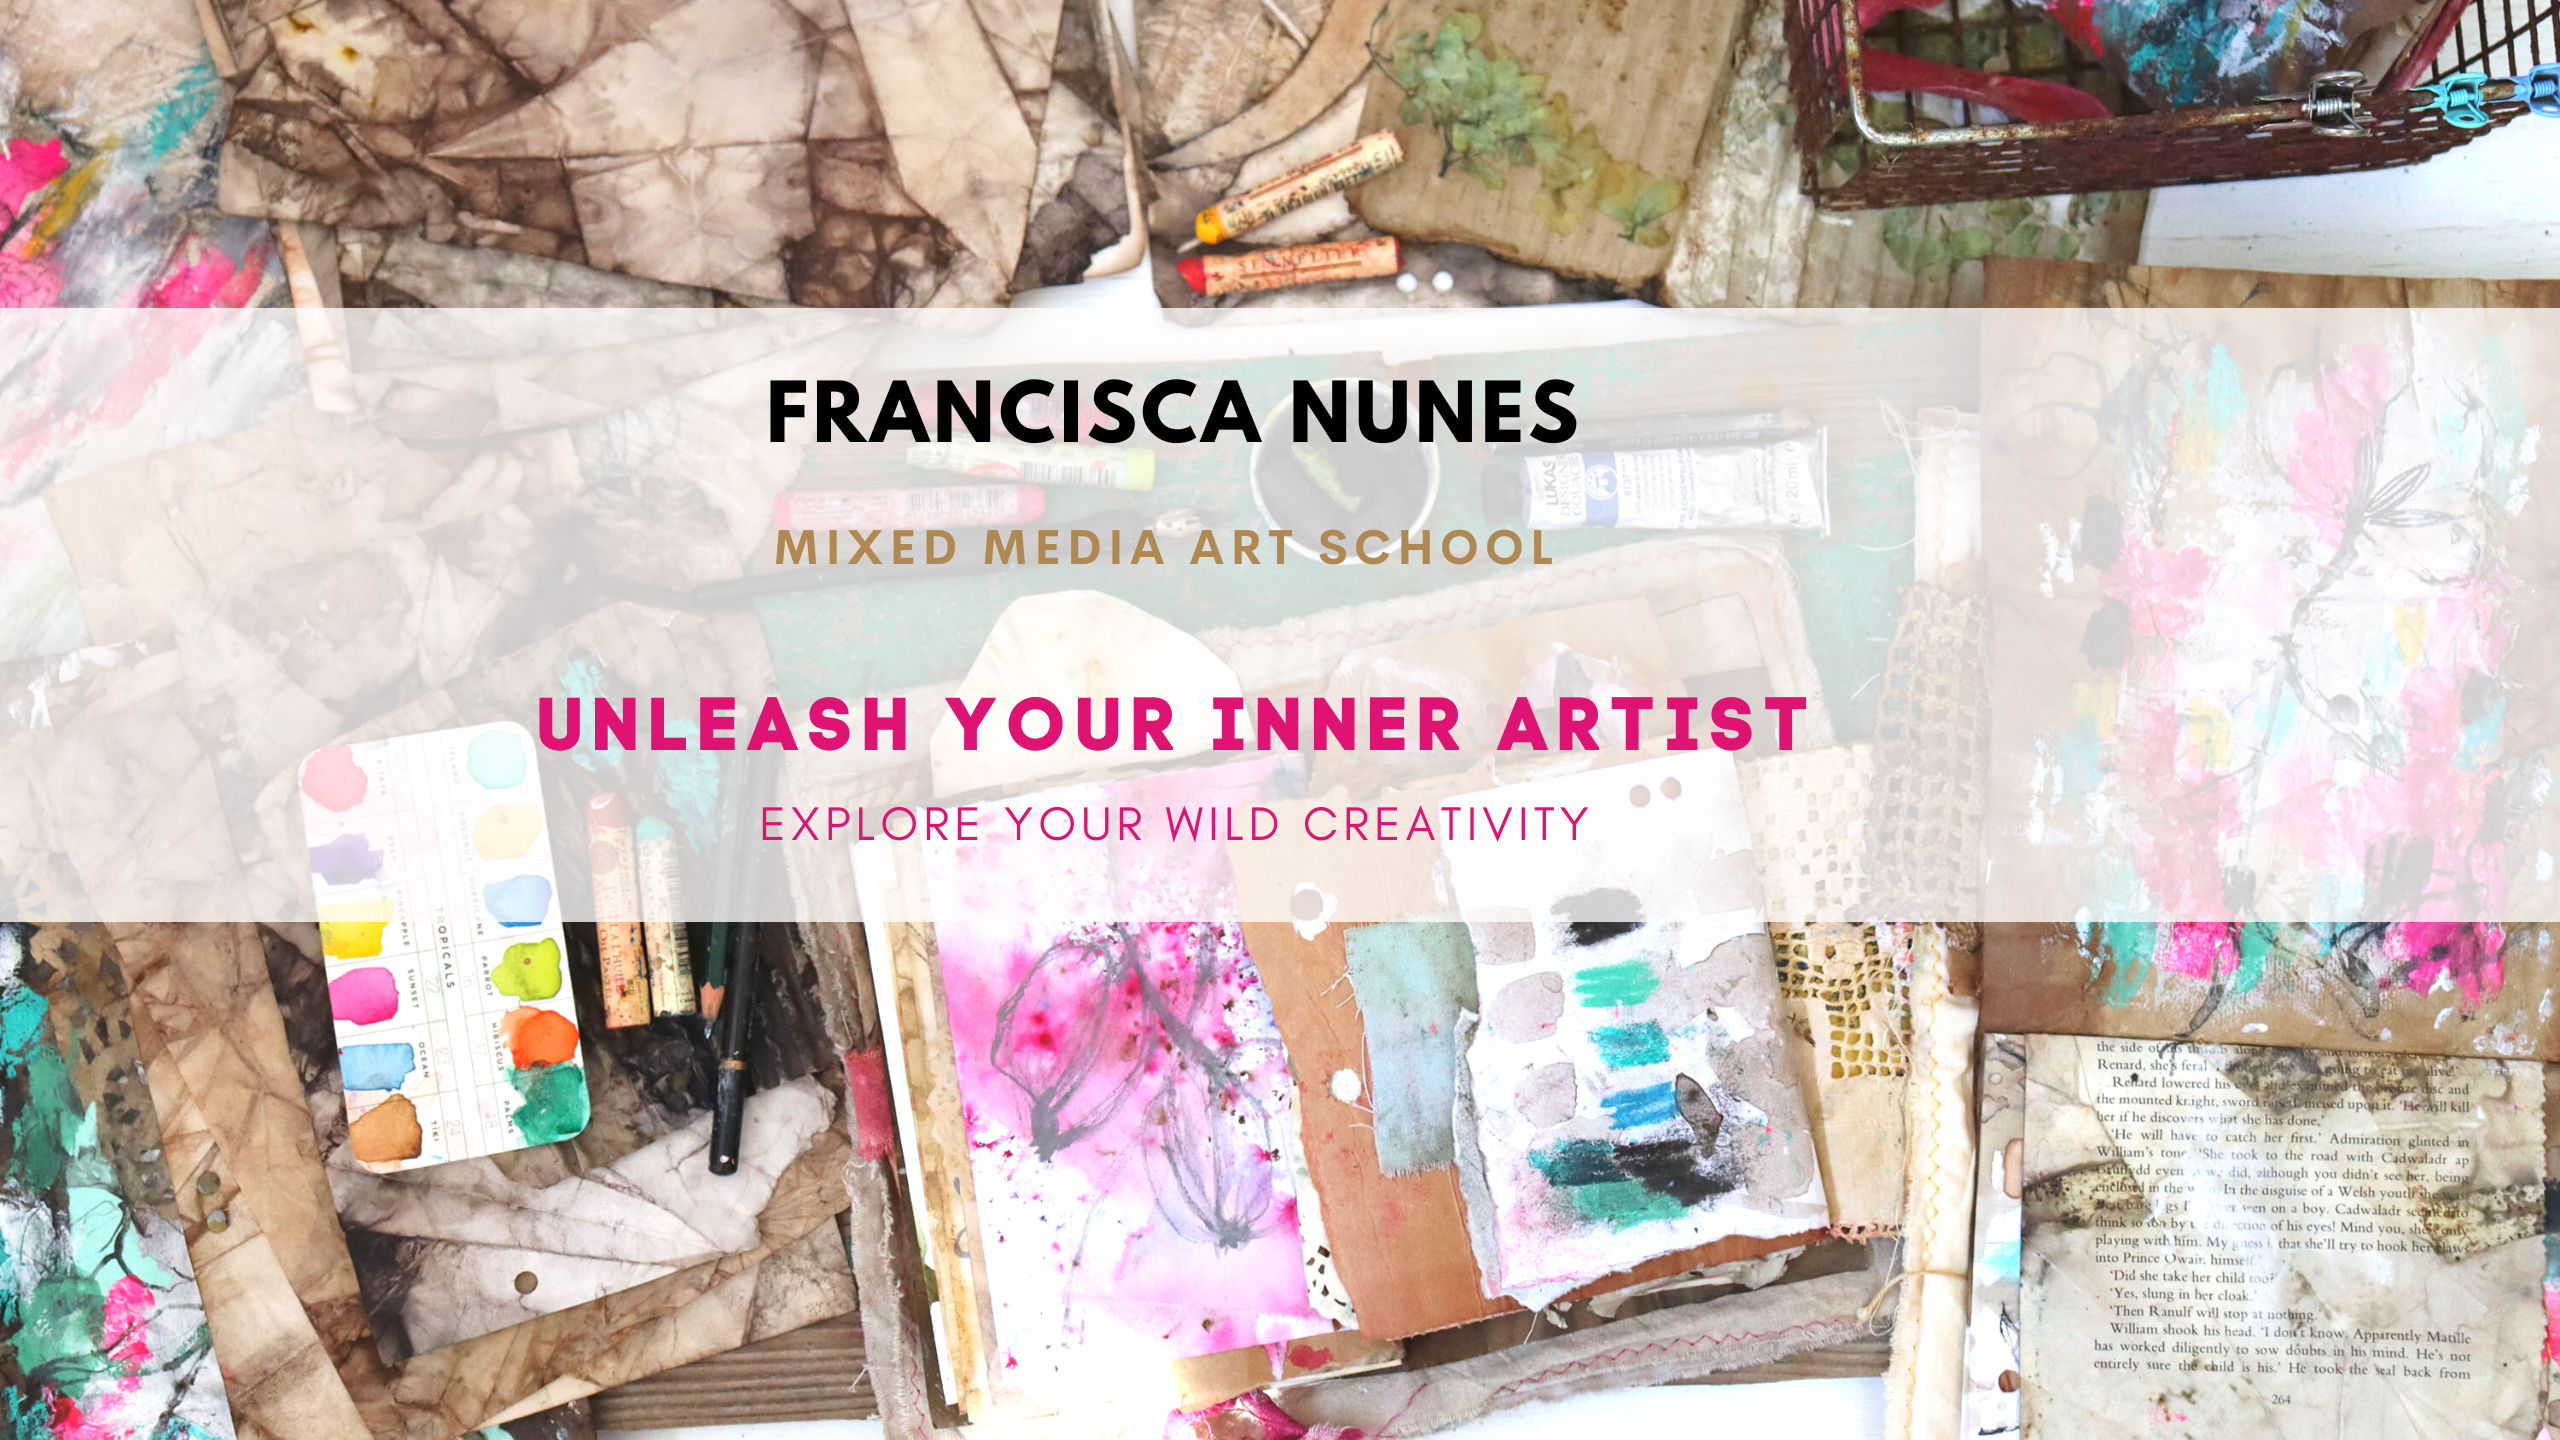 Francisca Nunes mixed media school